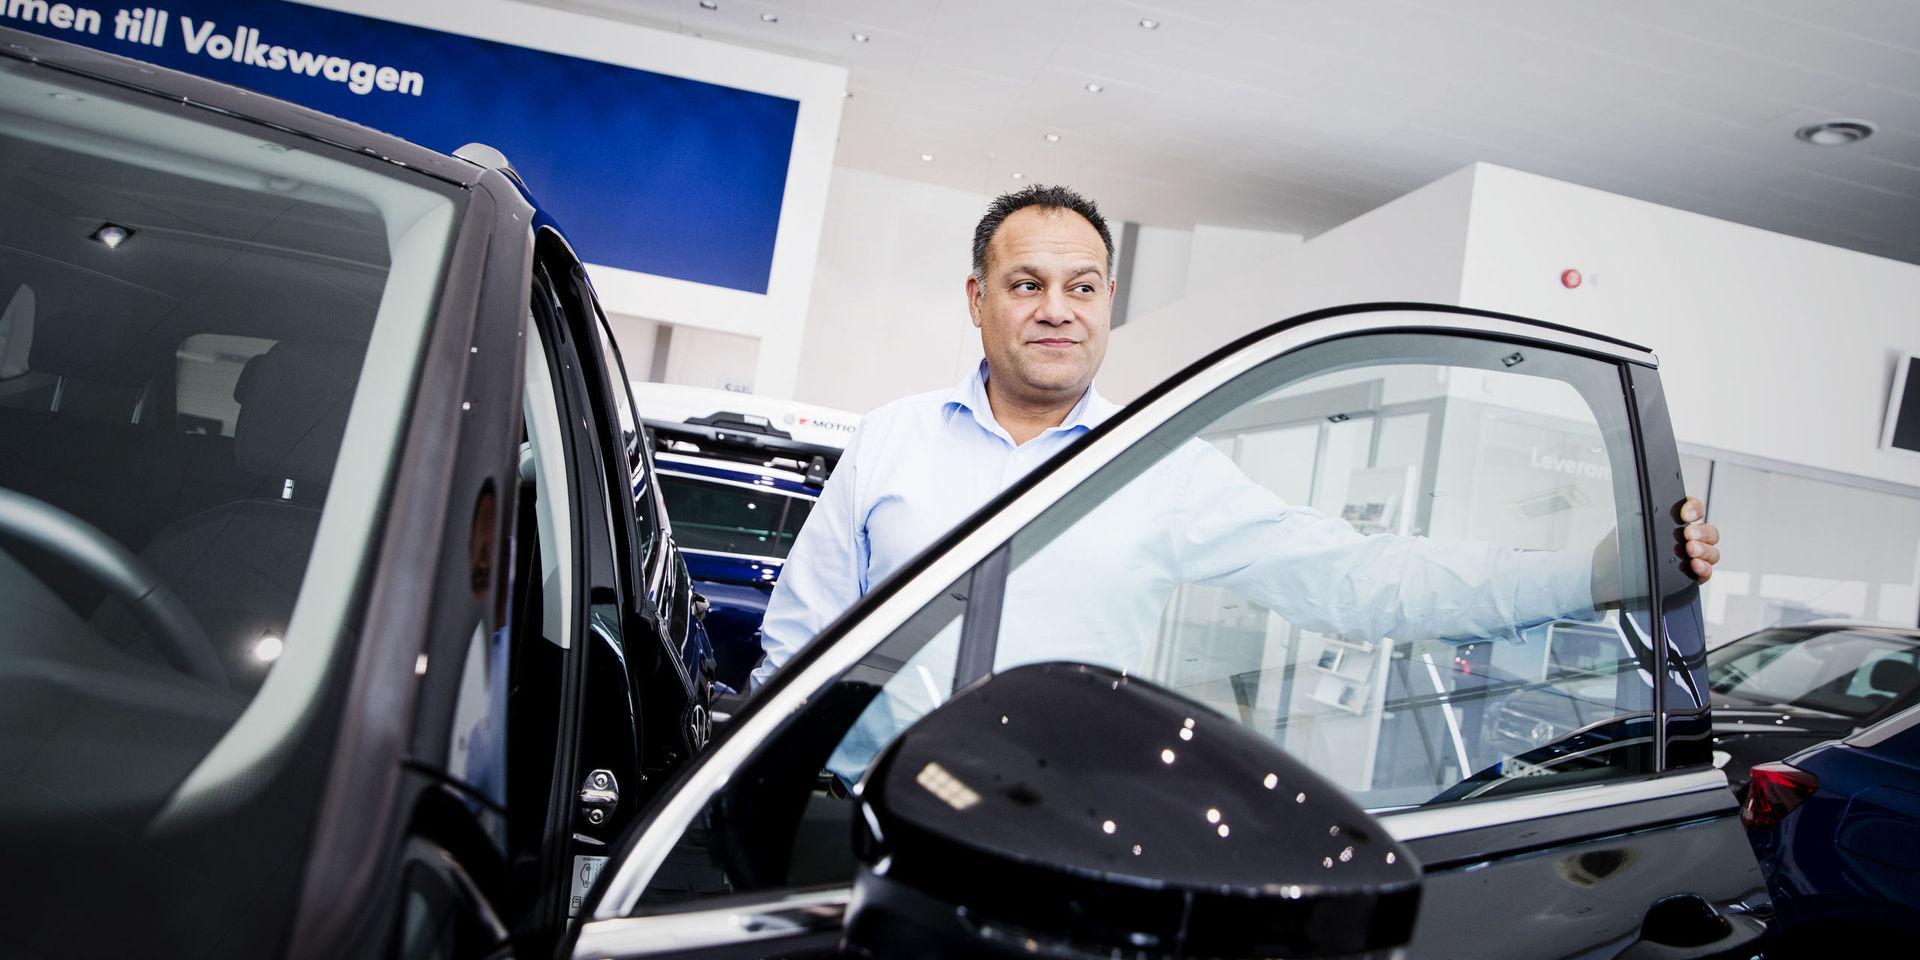 Arash Lidman är platschef på VW i Aröd och har noterat att intresset för privatleasing ökat kraftigt. Volkswagen satsar hårt på området och är också det bilmärke som är störst inom den privata leasingen.